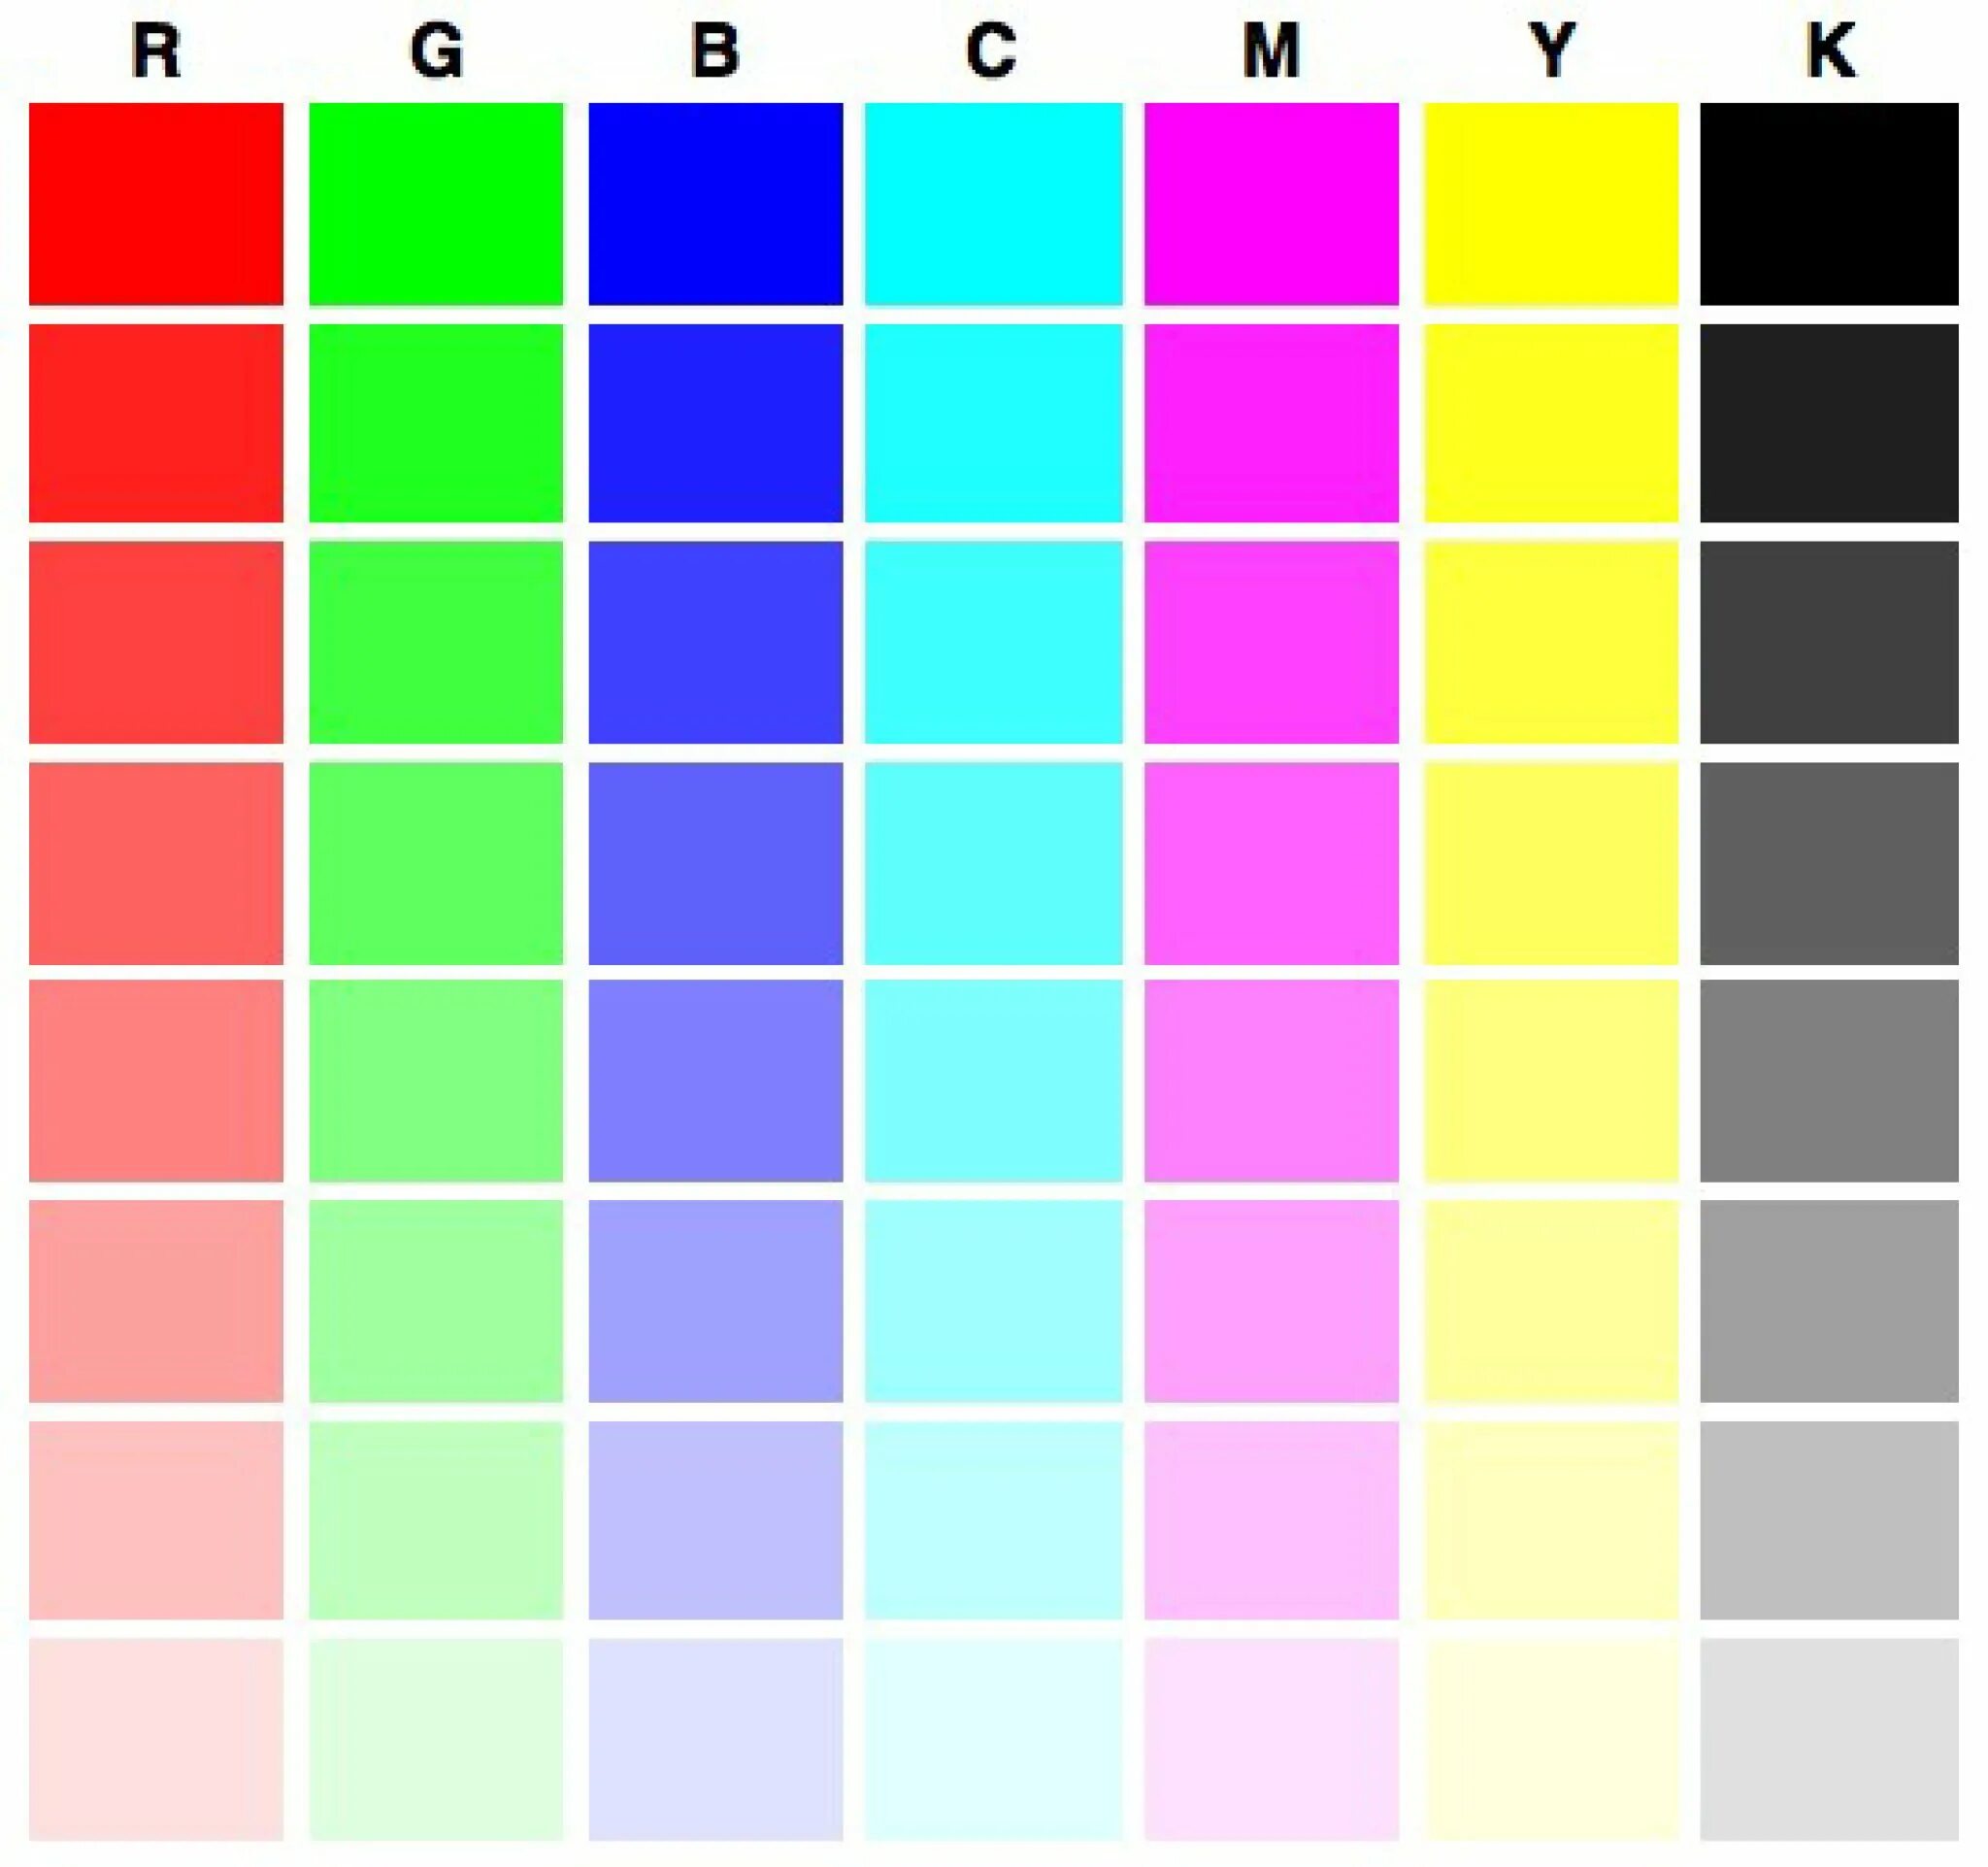 Тестовая страница для принтера Epson l800. Тест принтера Эпсон 6 цветов. Тест принтера Эпсон 4 цвета. Проверочная таблица цветов для принтера Эпсон.